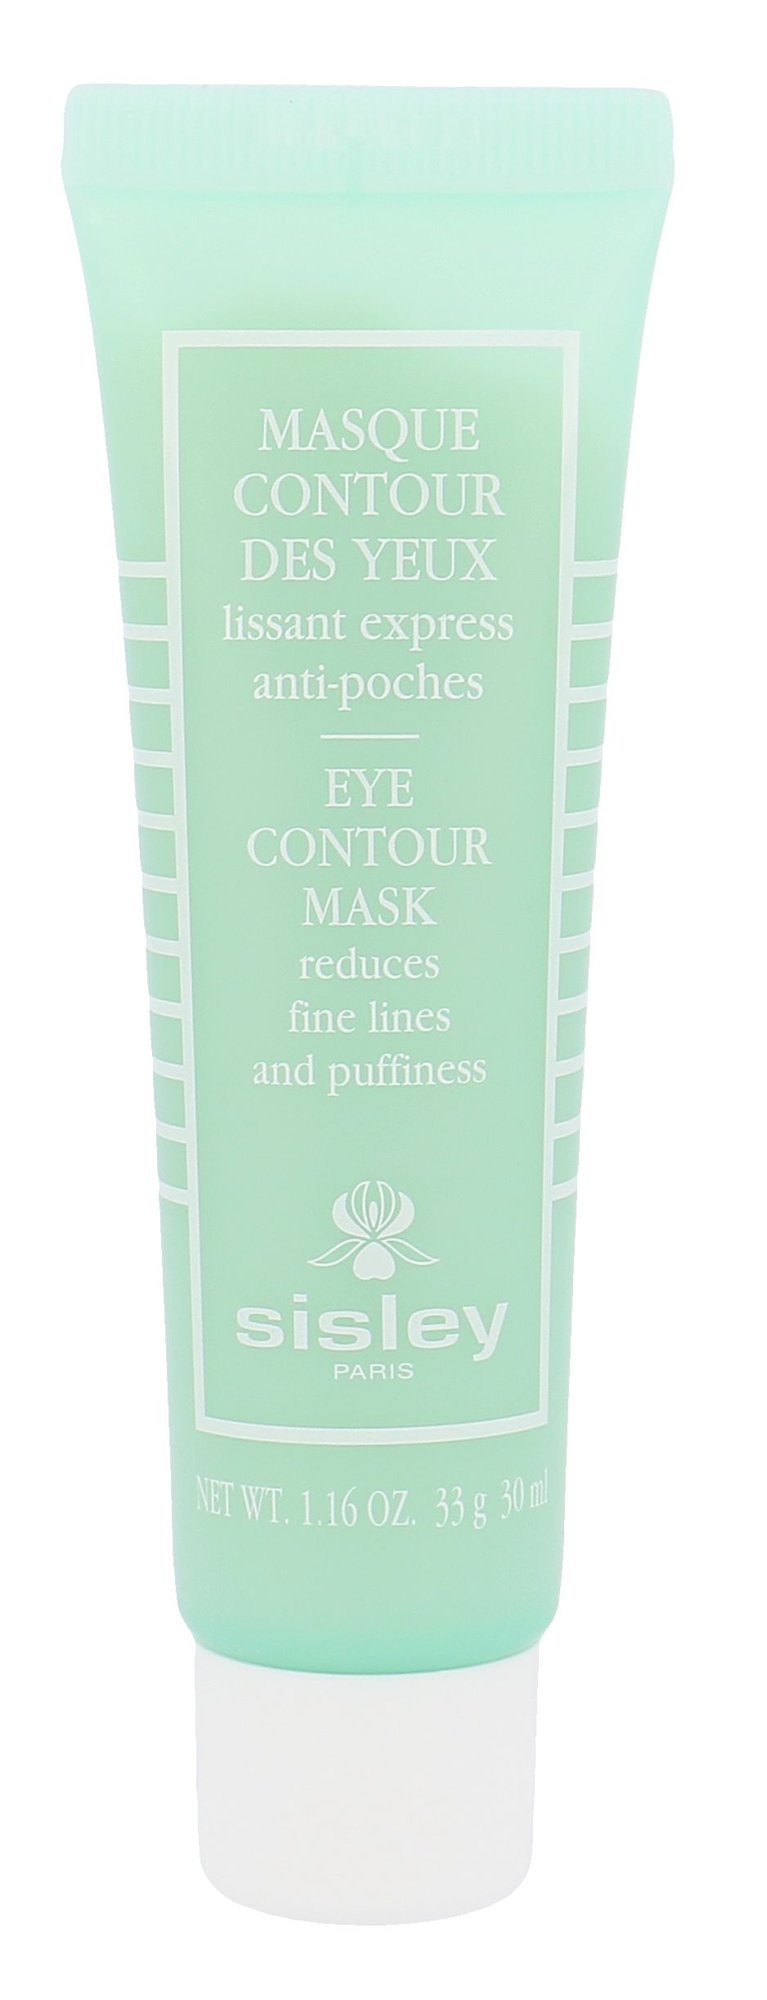 Sisley Eye Contour Mask NIŠINIAI paakių kaukė